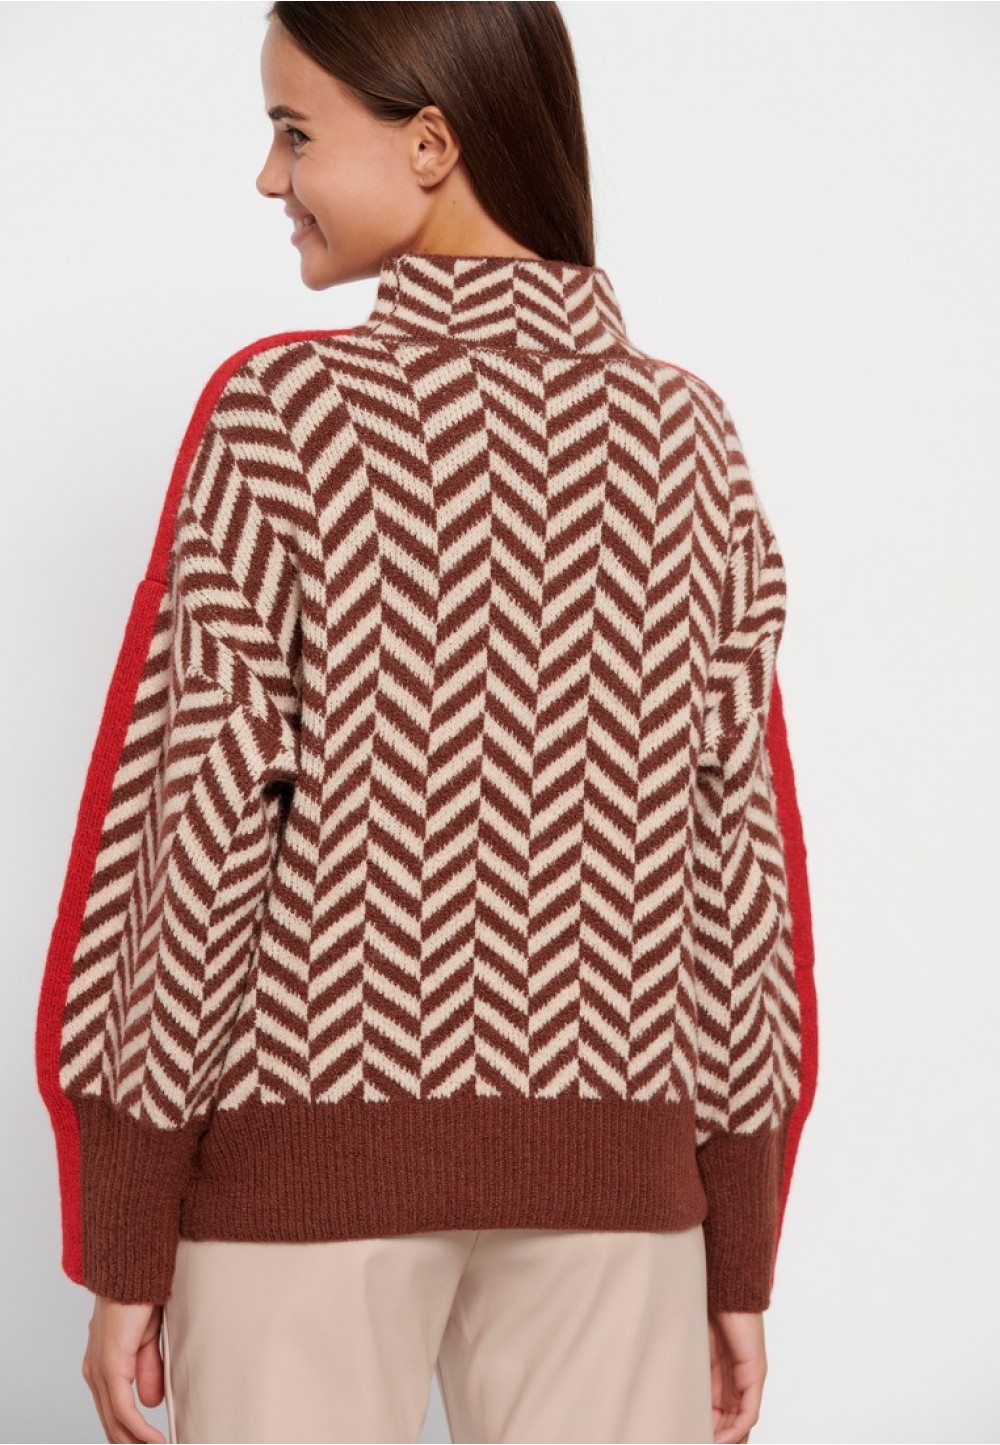 Женский свитер с высоким воротником в карамельную полоску 